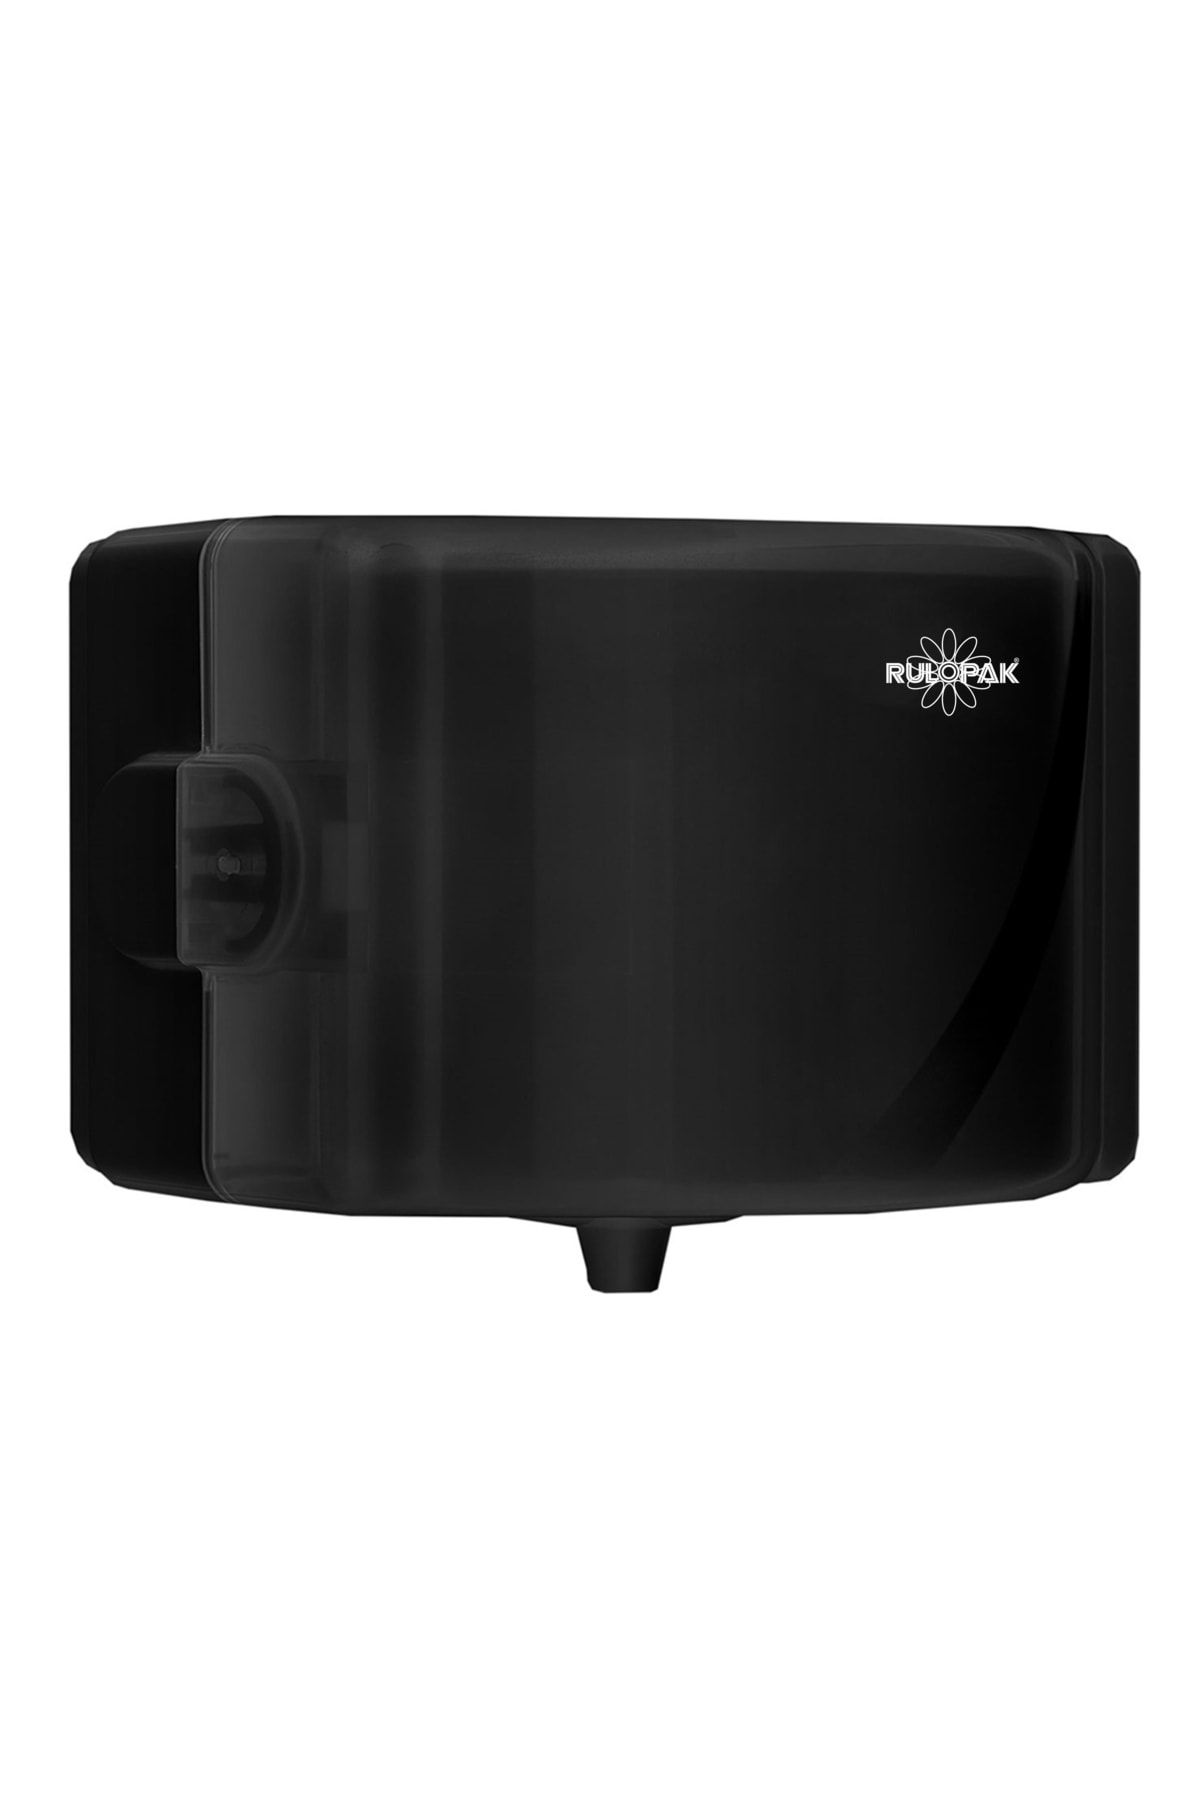 Rulopak 360° Mini Cimri Içten Çekmeli Tuvalet Kağıdı (siyah)